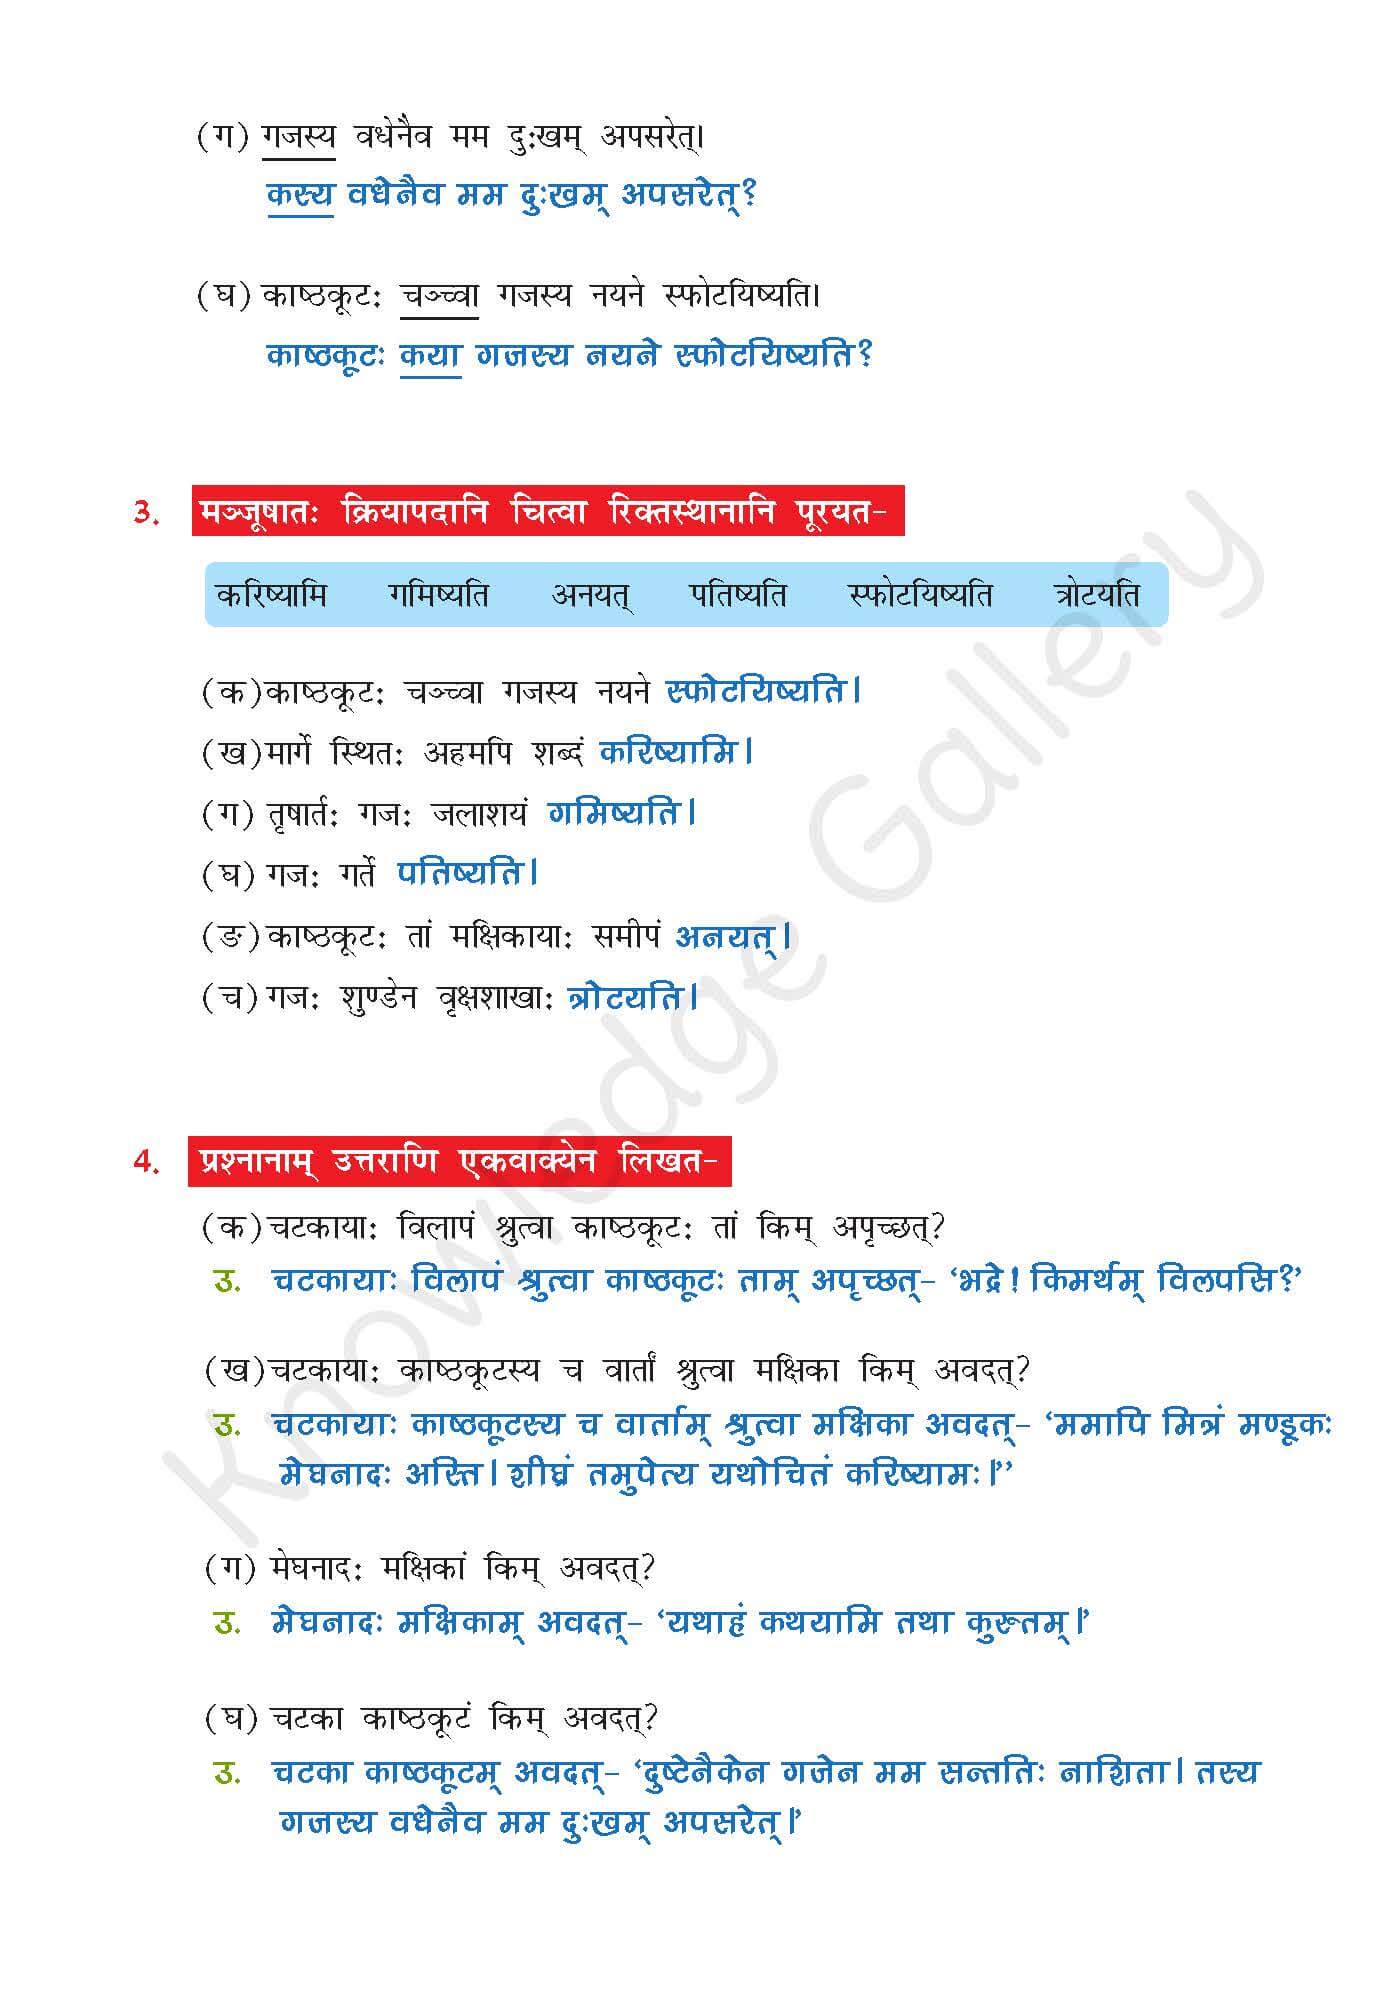 NCERT Solution For Class 7 Sanskrit Chapter 10 part 4